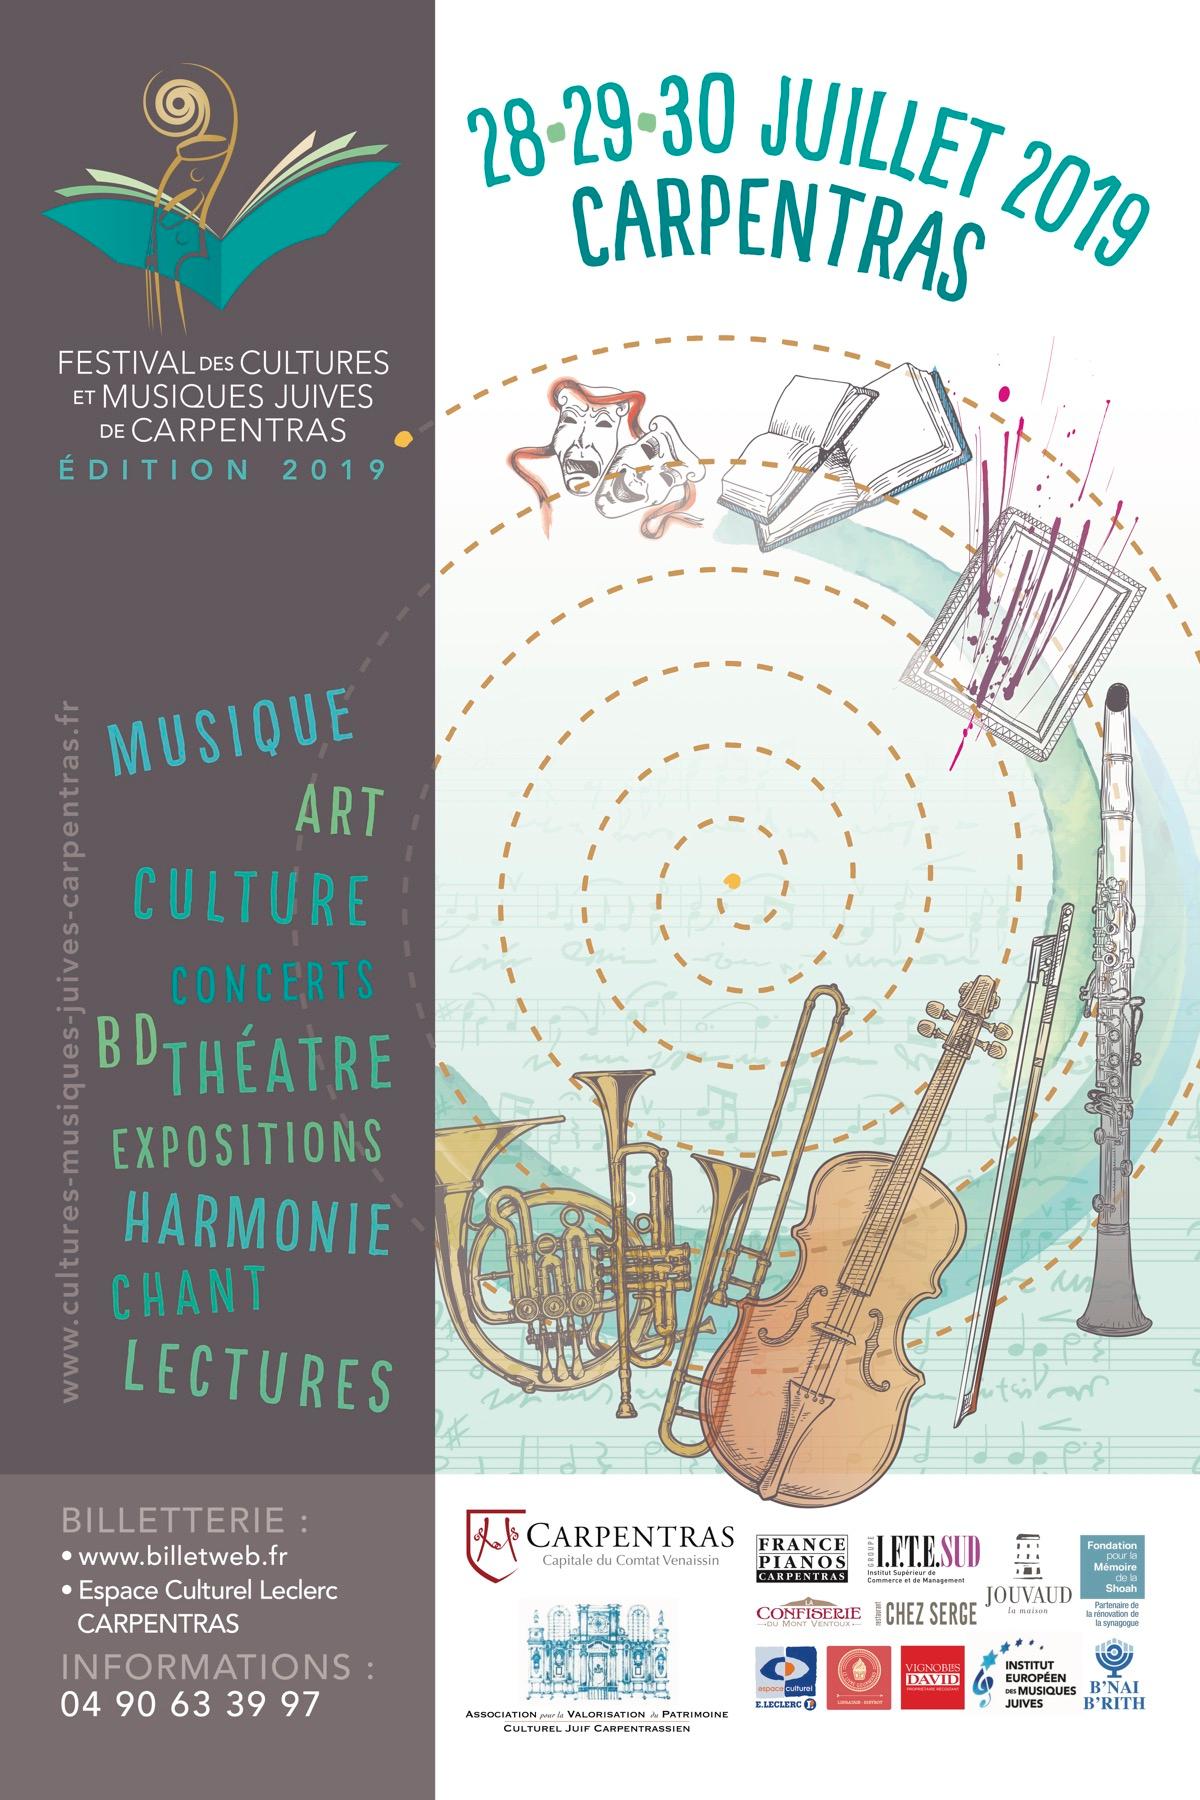 Carpentras - Festival de Musiques Juives 2019